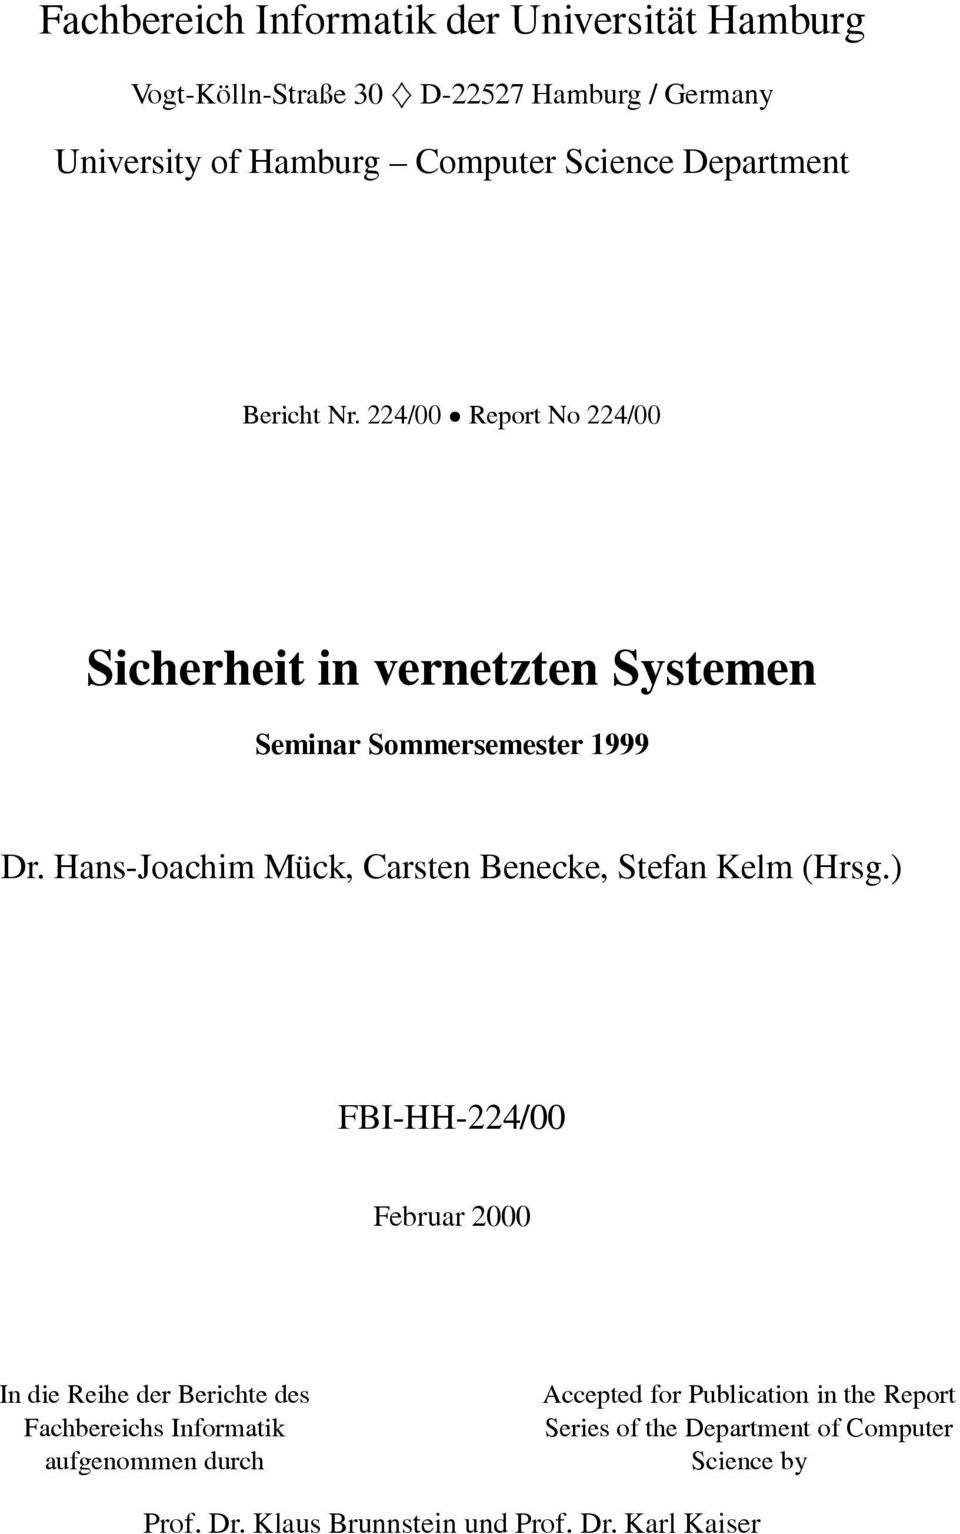 Hans-Joachim Mück, Carsten Benecke, Stefan Kelm (Hrsg.